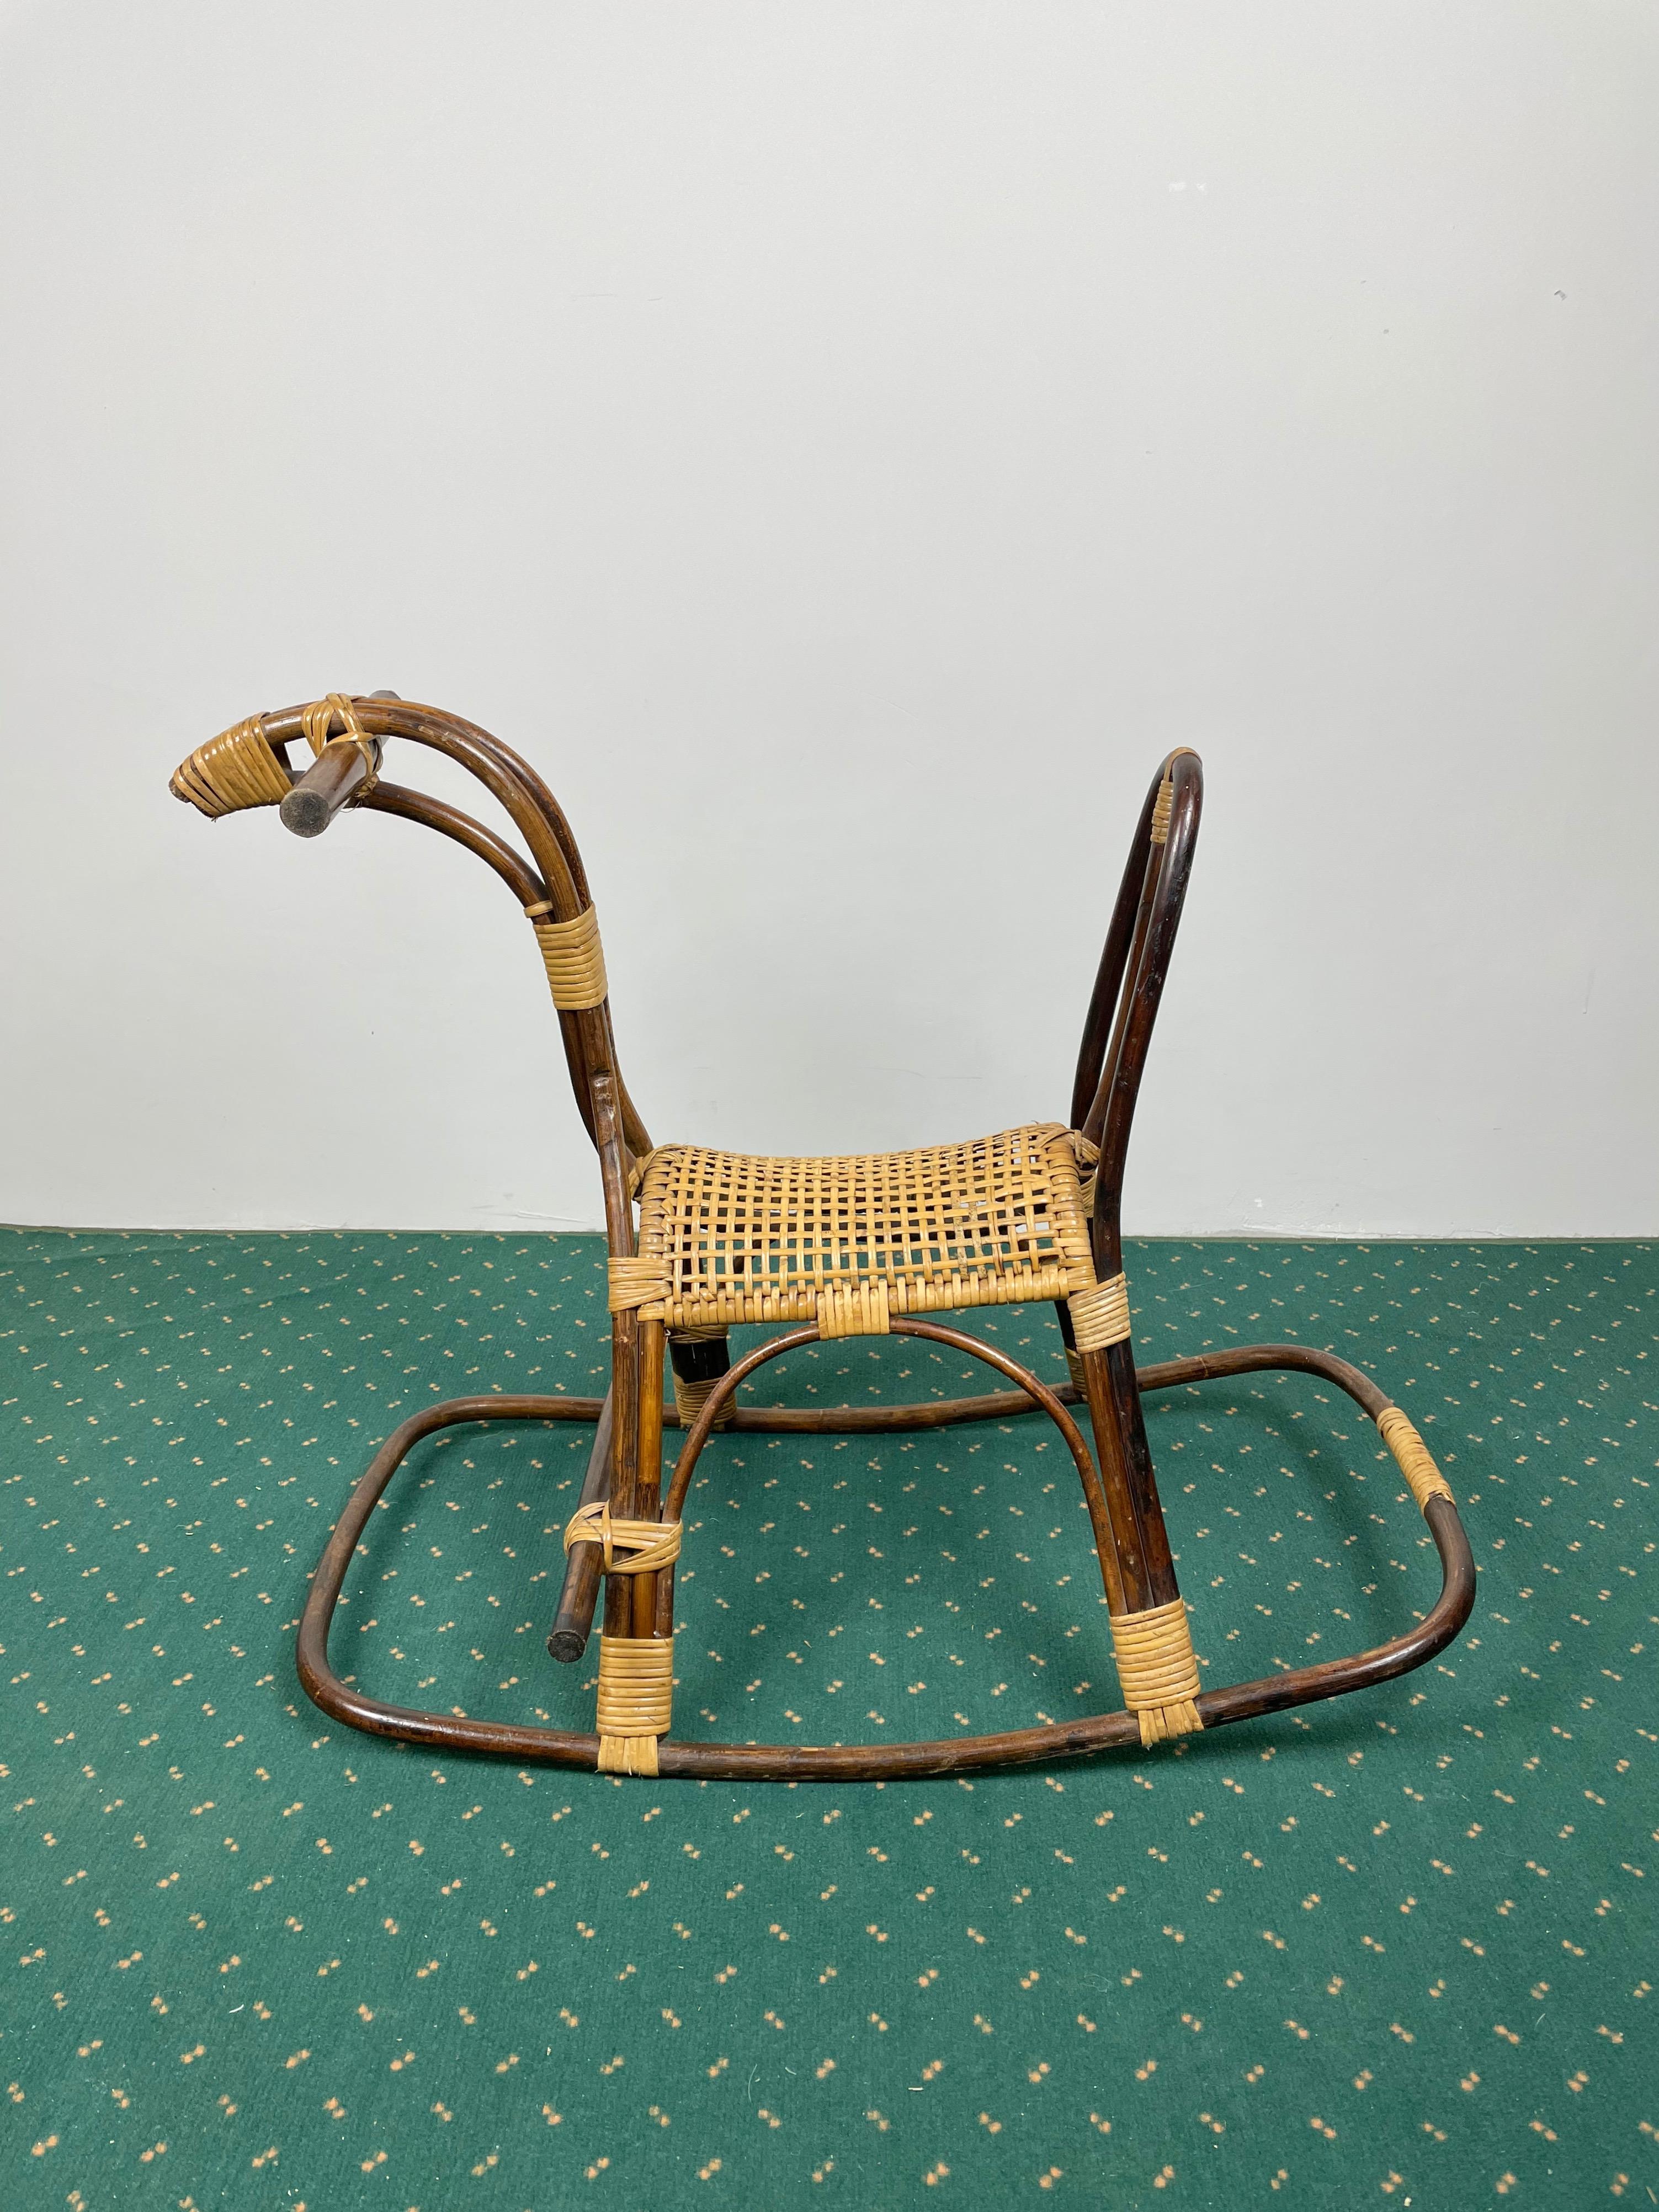 Kinderschaukelpferd aus Rattan, Bambus und Korbgeflecht mit Sitz aus Korbgeflecht. Hergestellt in Italien in den 1960er Jahren.